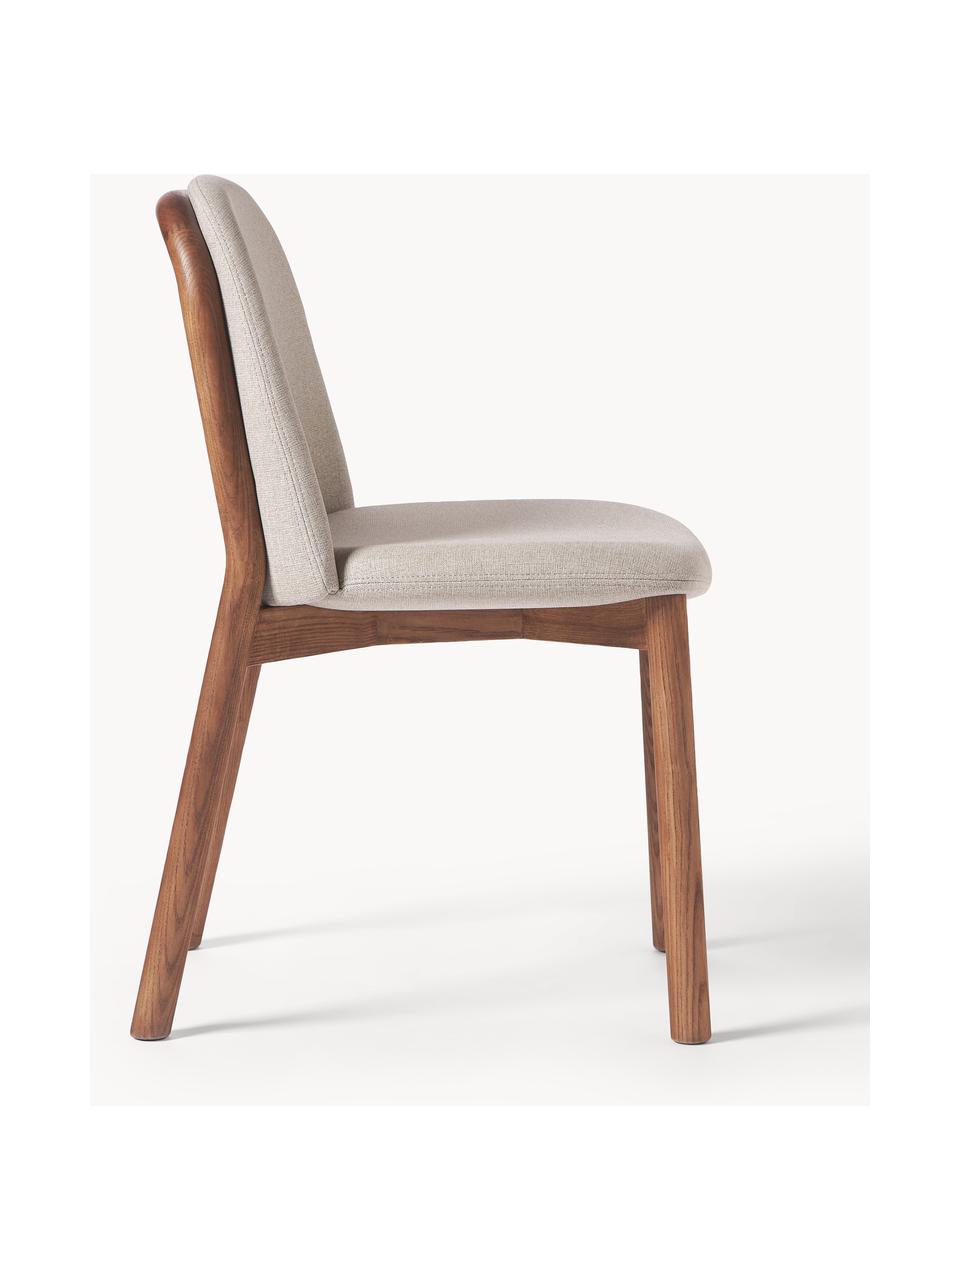 Čalouněná židle z jasanového dřeva Julie, Greige, tmavé jasanové dřevo, Š 47 cm, V 81 cm